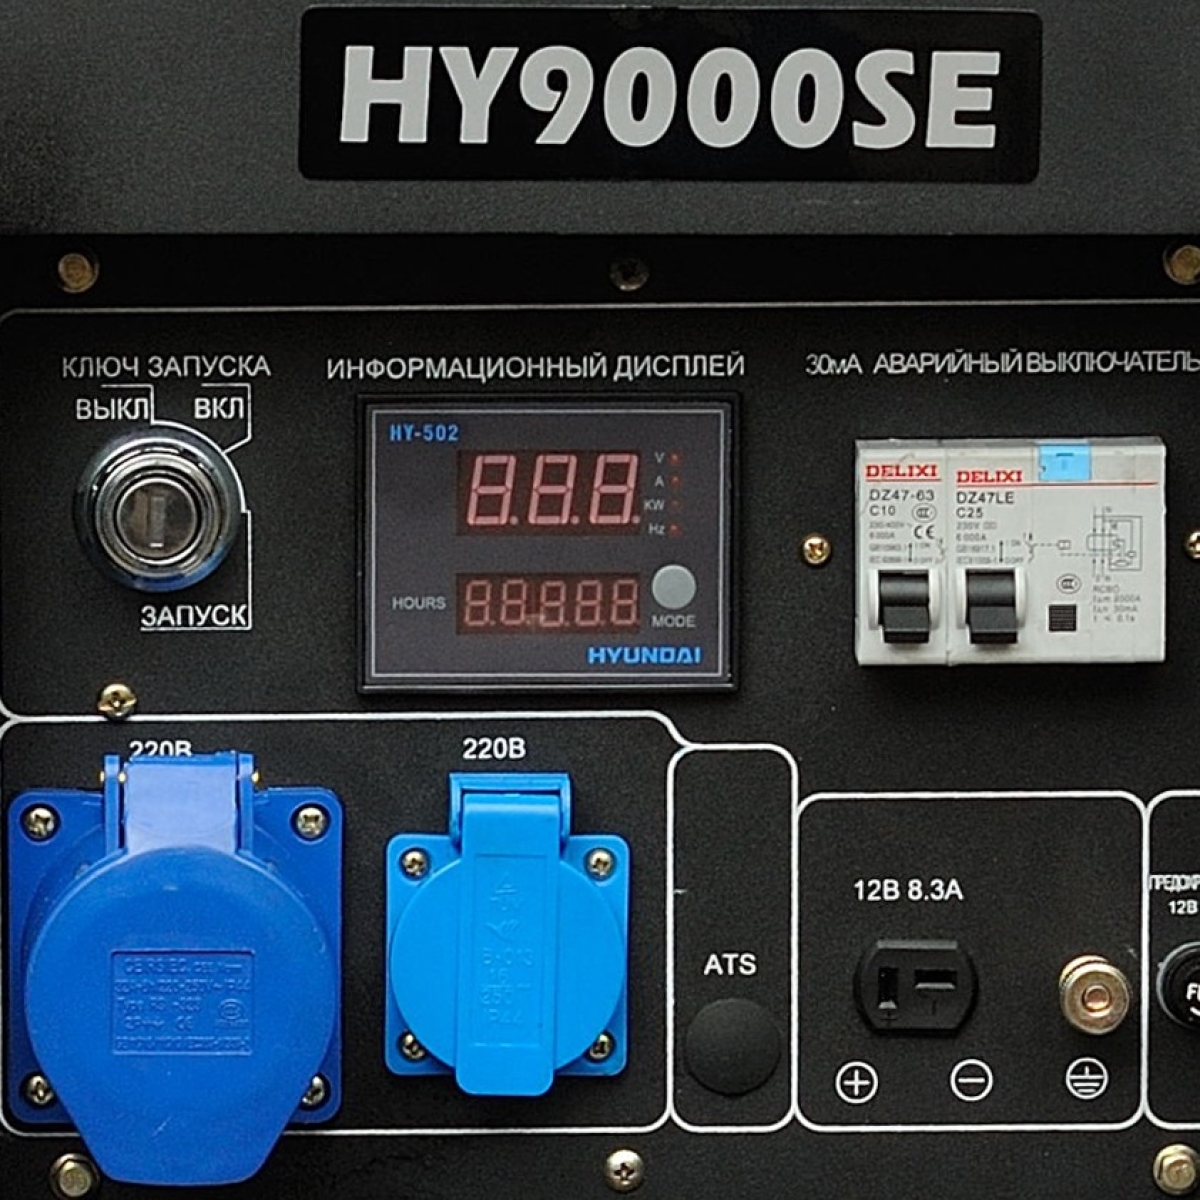 Однофазный бензиновый генератор Hyundai HY 9000SE, органы управления